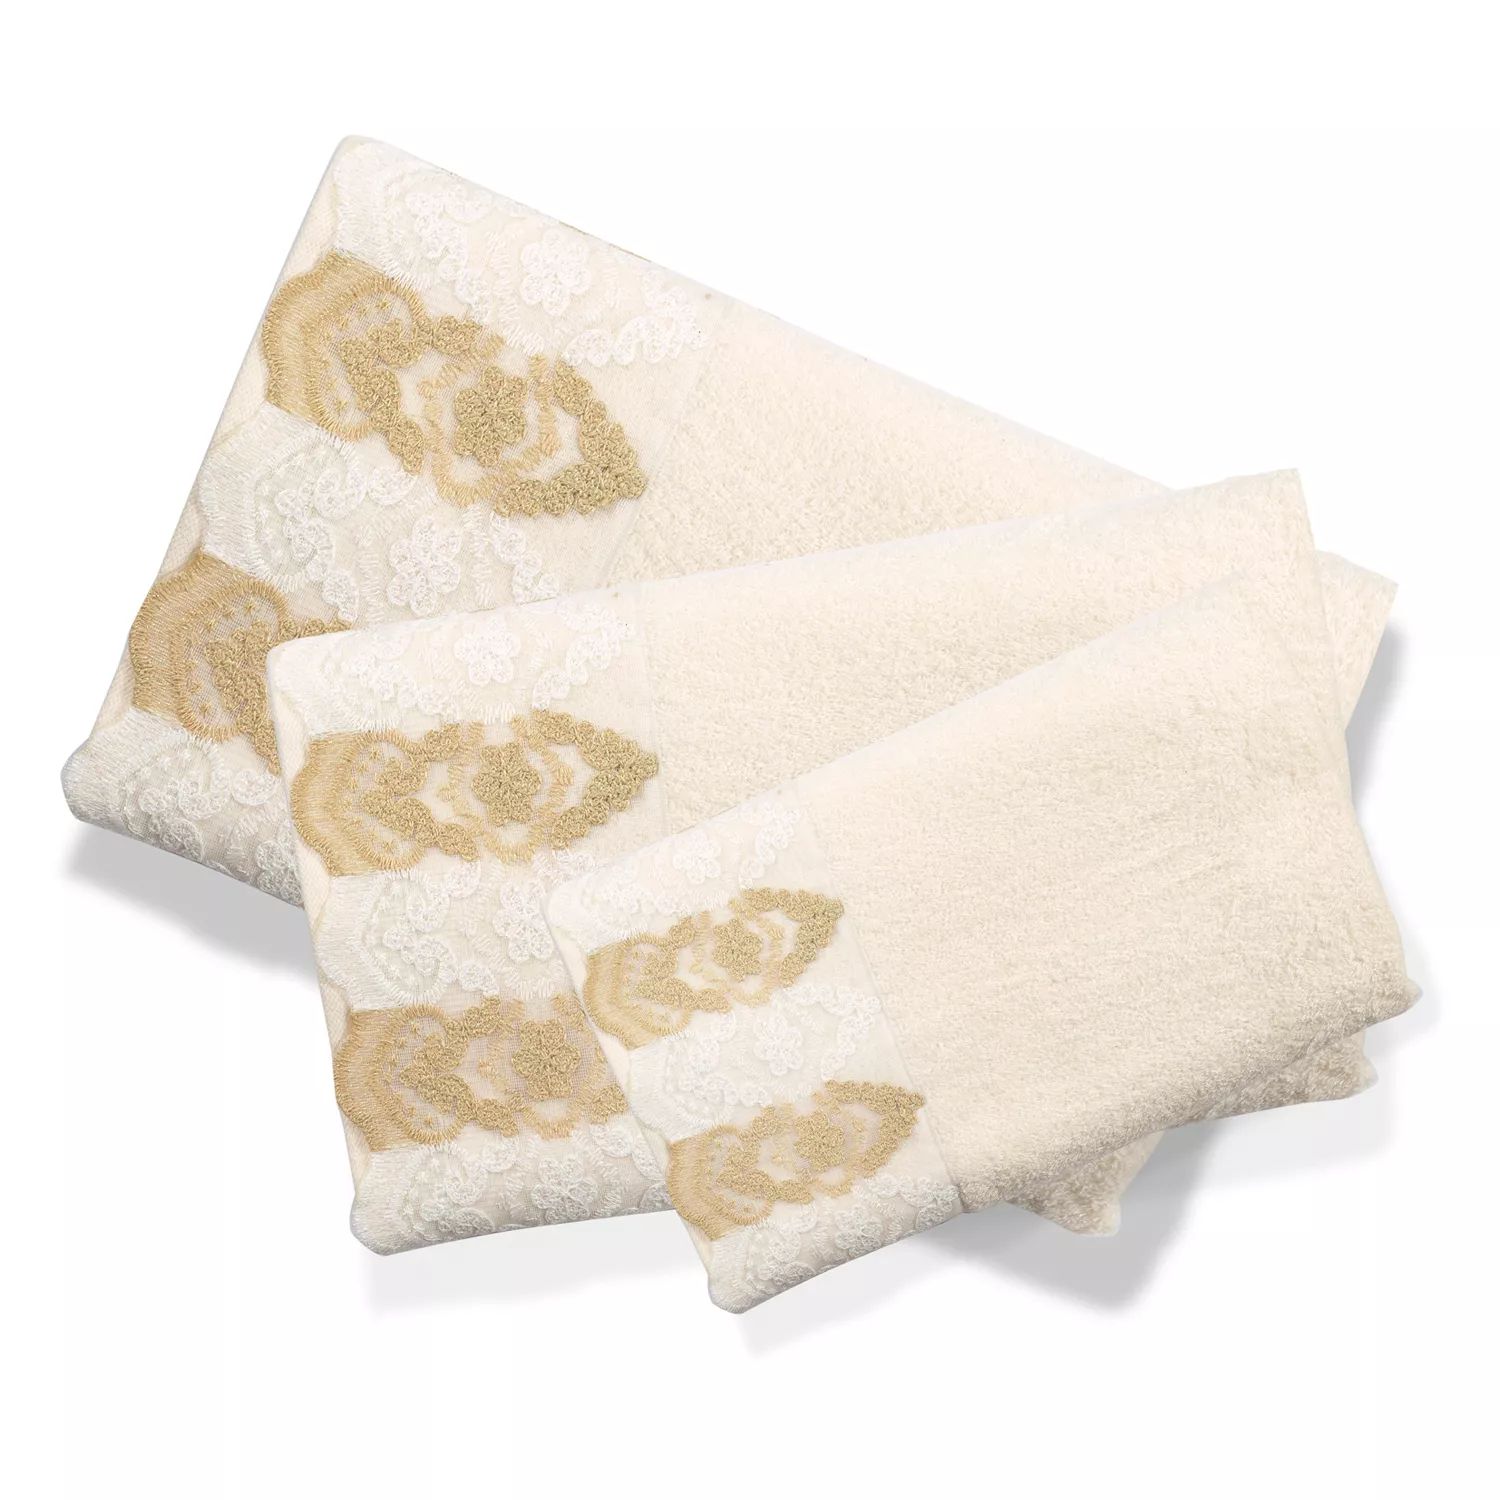 Популярный набор банных полотенец Arabella из 3 предметов популярный набор полотенец bath secret garden из 3 предметов